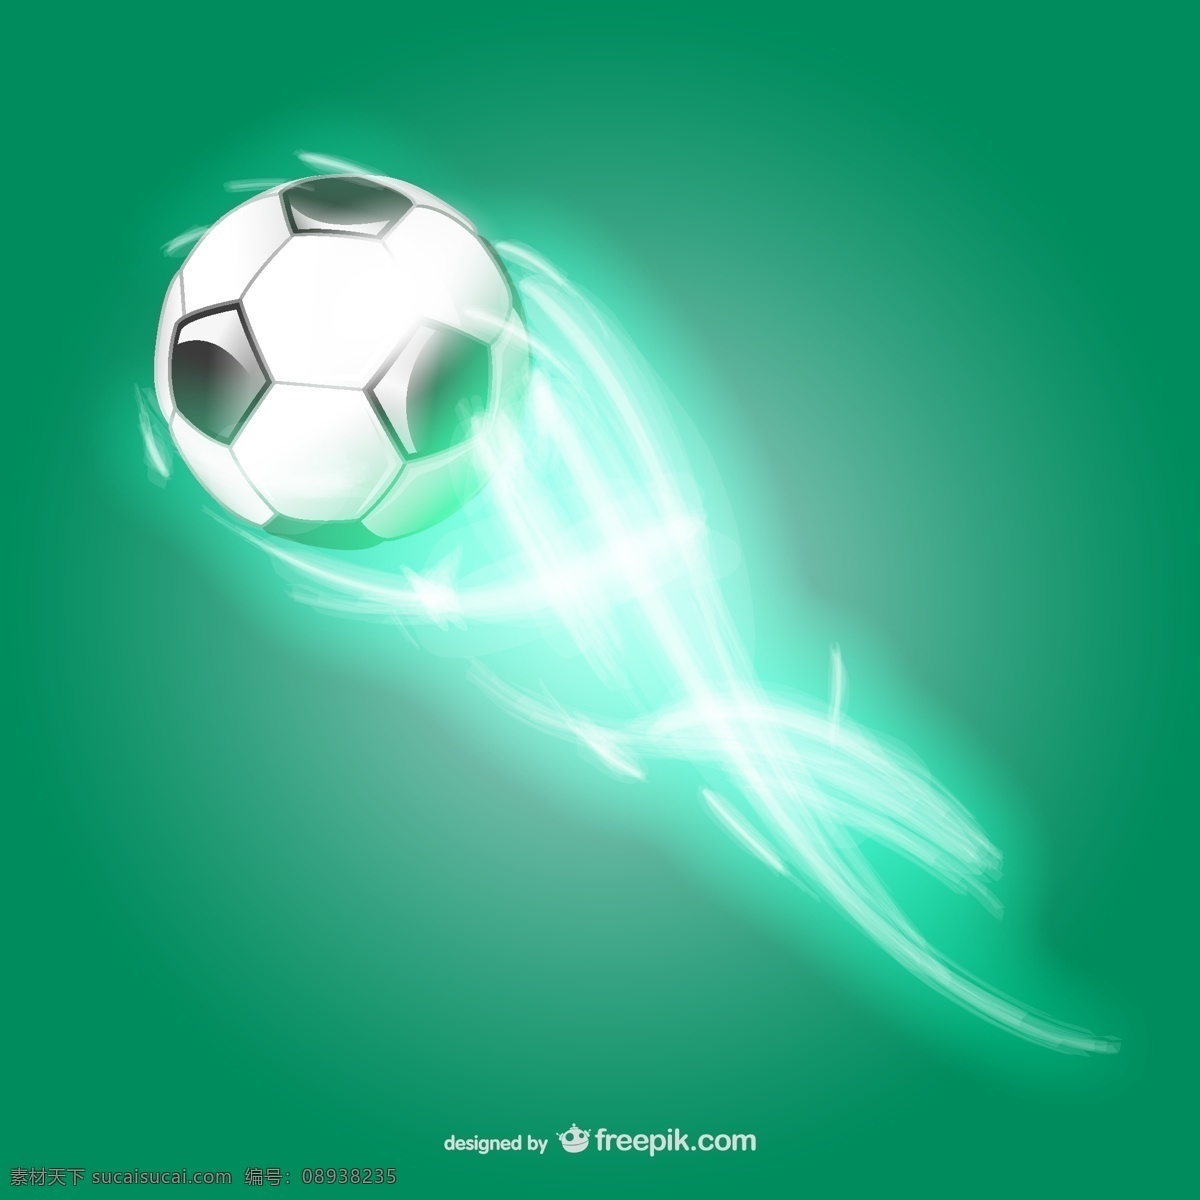 光效足球矢量 精美图片 绿色背景 模板 设计稿 素材元素 体育素材 旋风 光效足球 闪耀光束 足球 源文件 矢量图